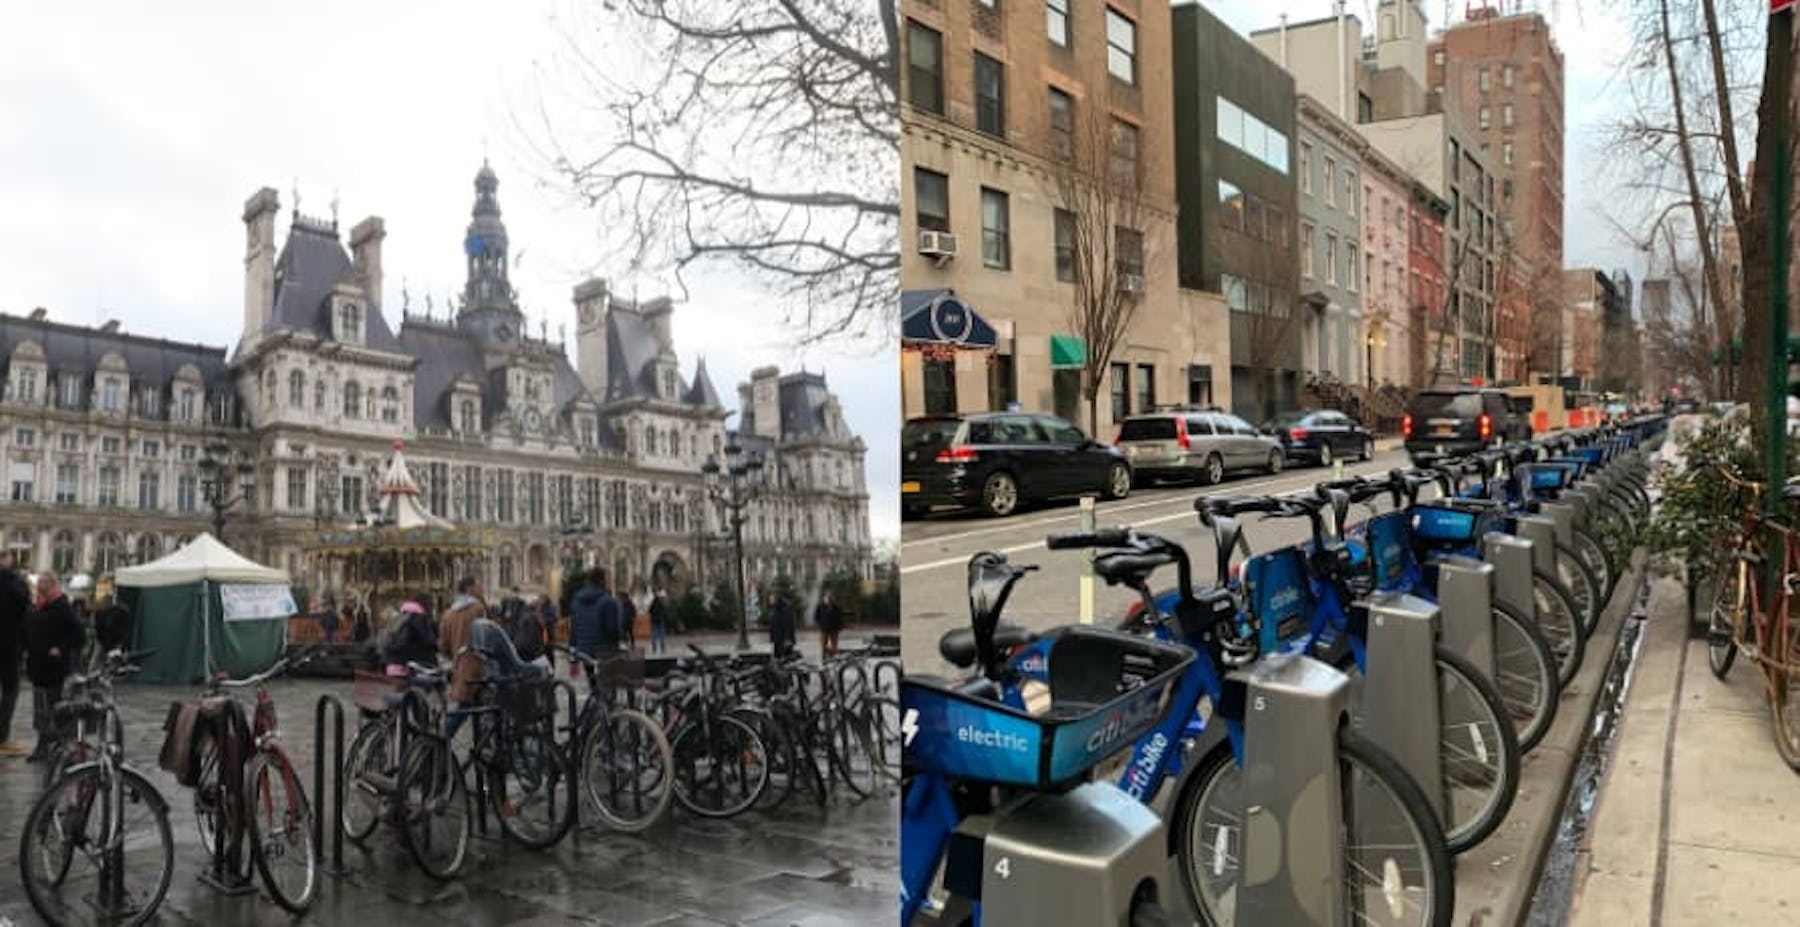 rideshare bike servies in paris vs. nyc